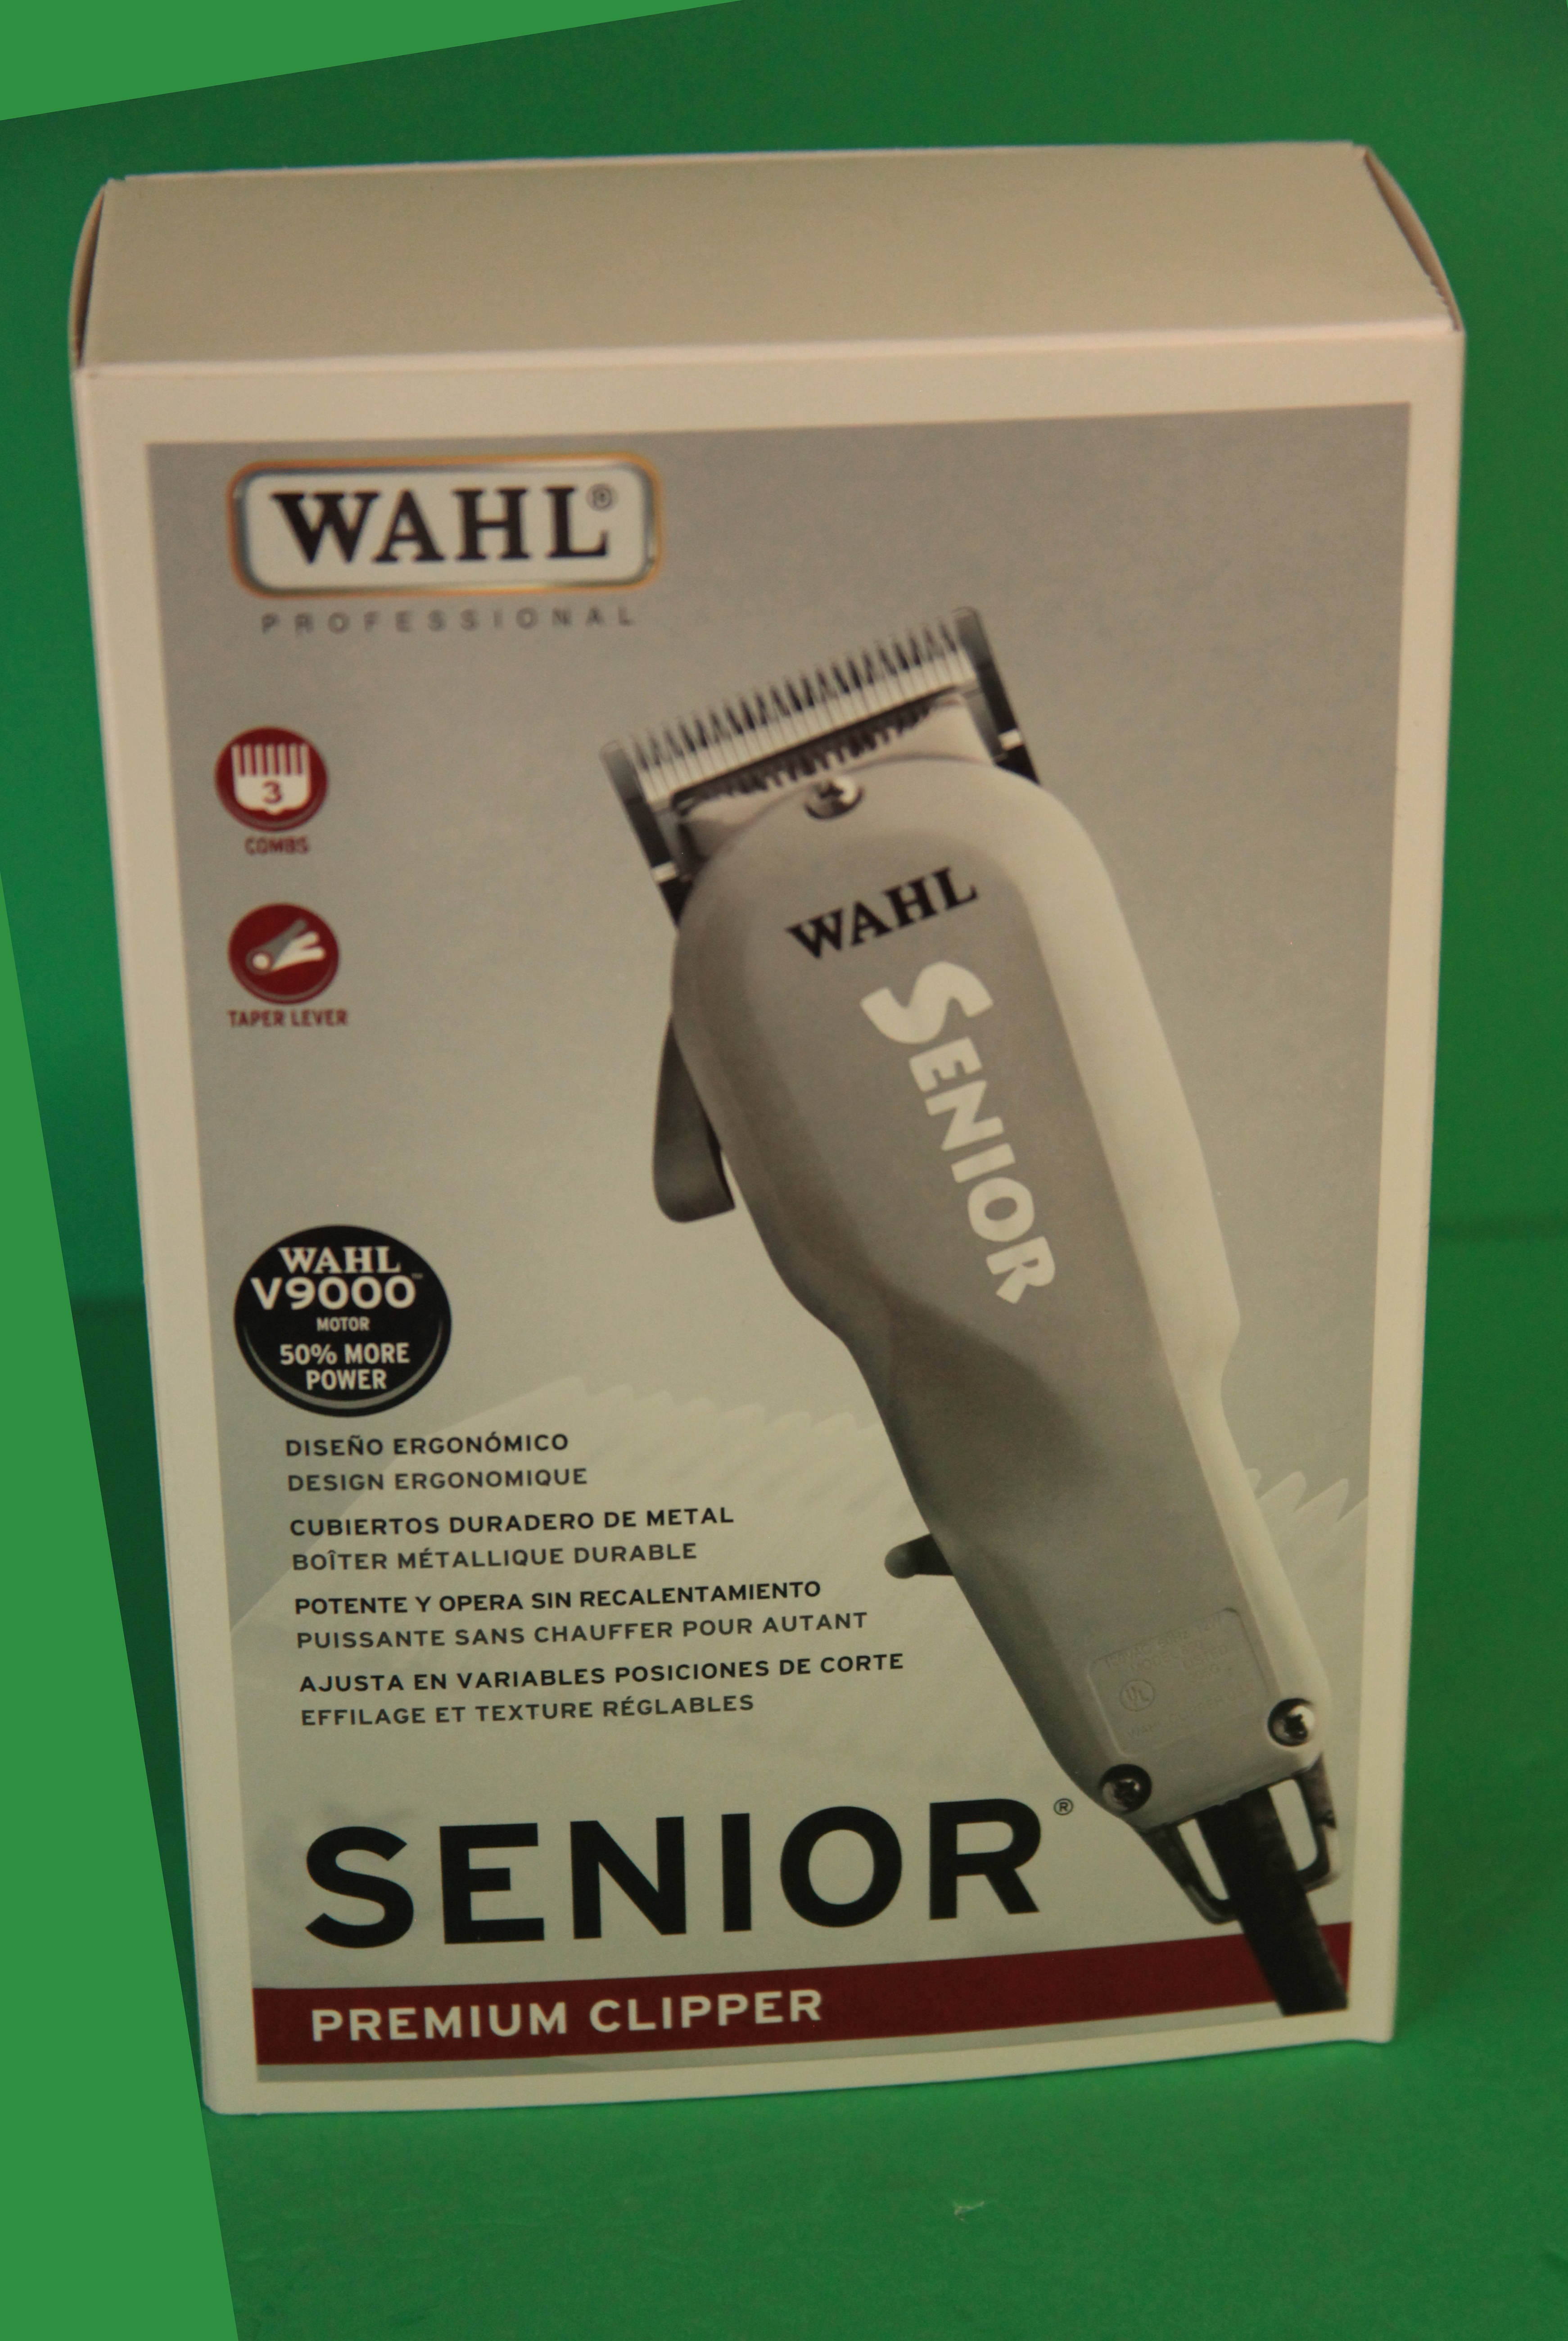 wahl senior v9000